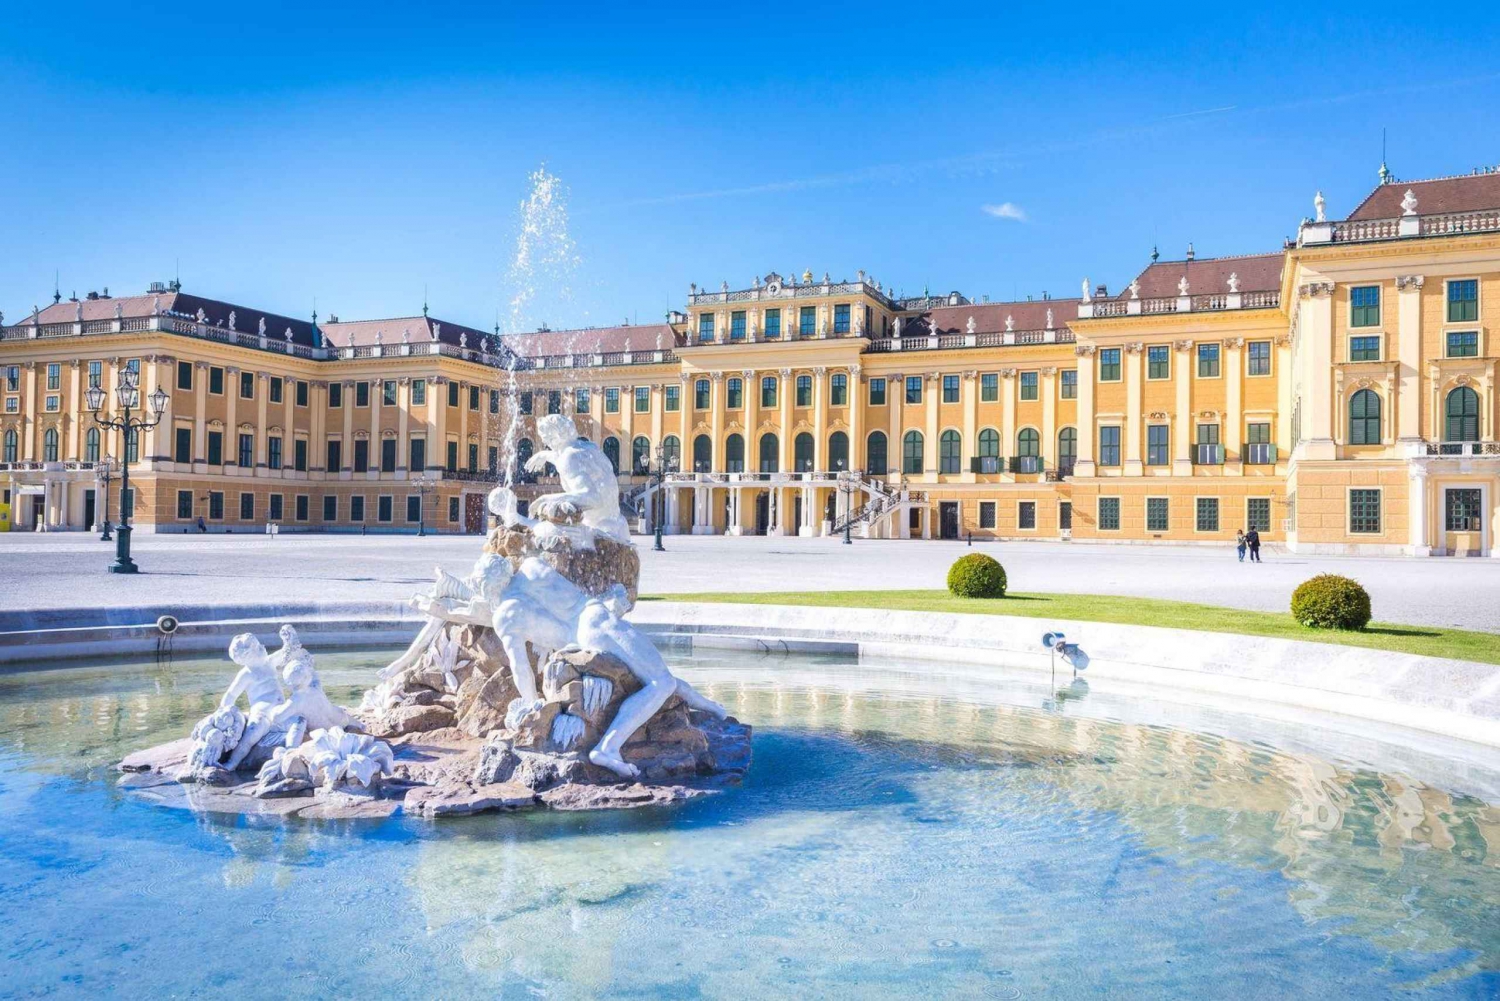 Wien: Schonbrunn Palace Imperial Ticket & Audio Tour (ENG)